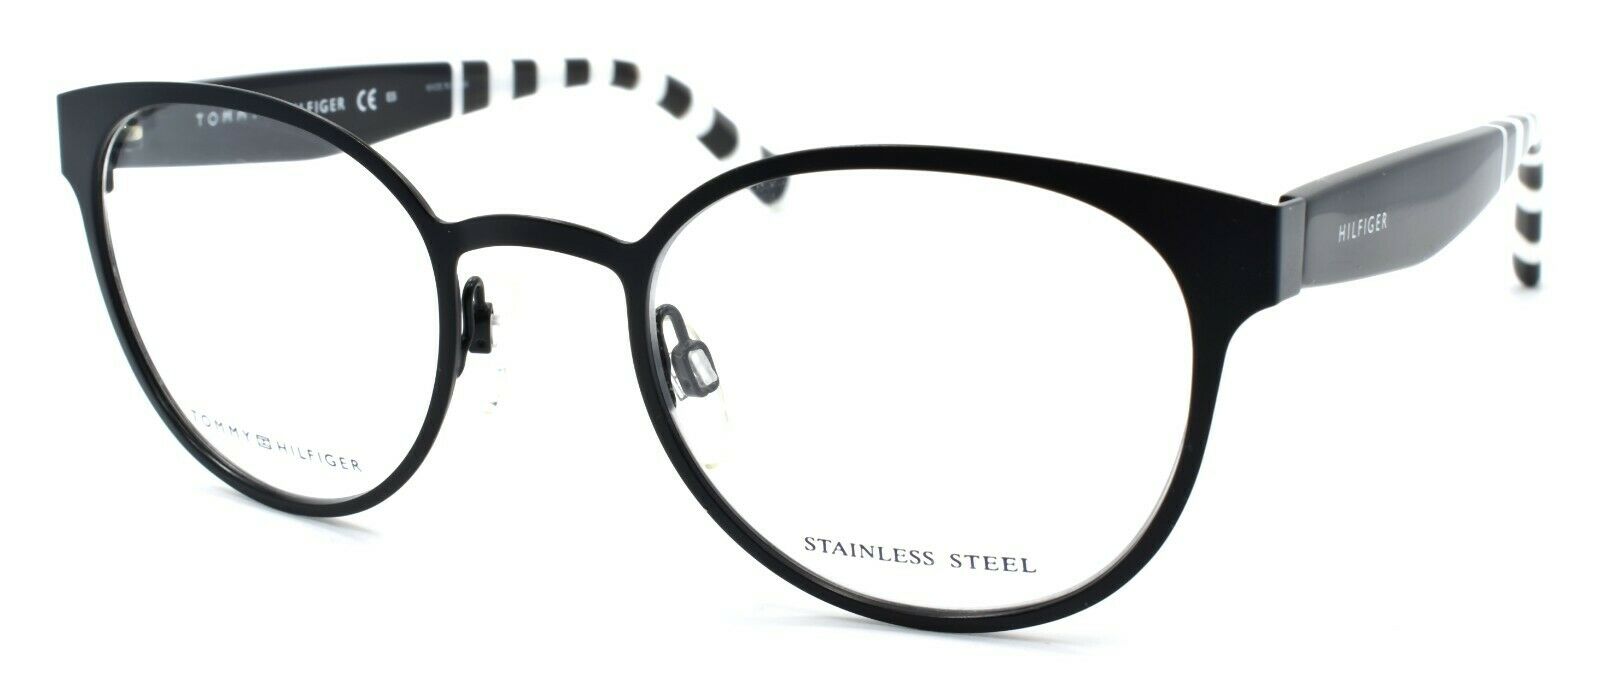 1-TOMMY HILFIGER TH 1484 003 Women's Eyeglasses Frames 49-21-140 Matte Black-762753621221-IKSpecs